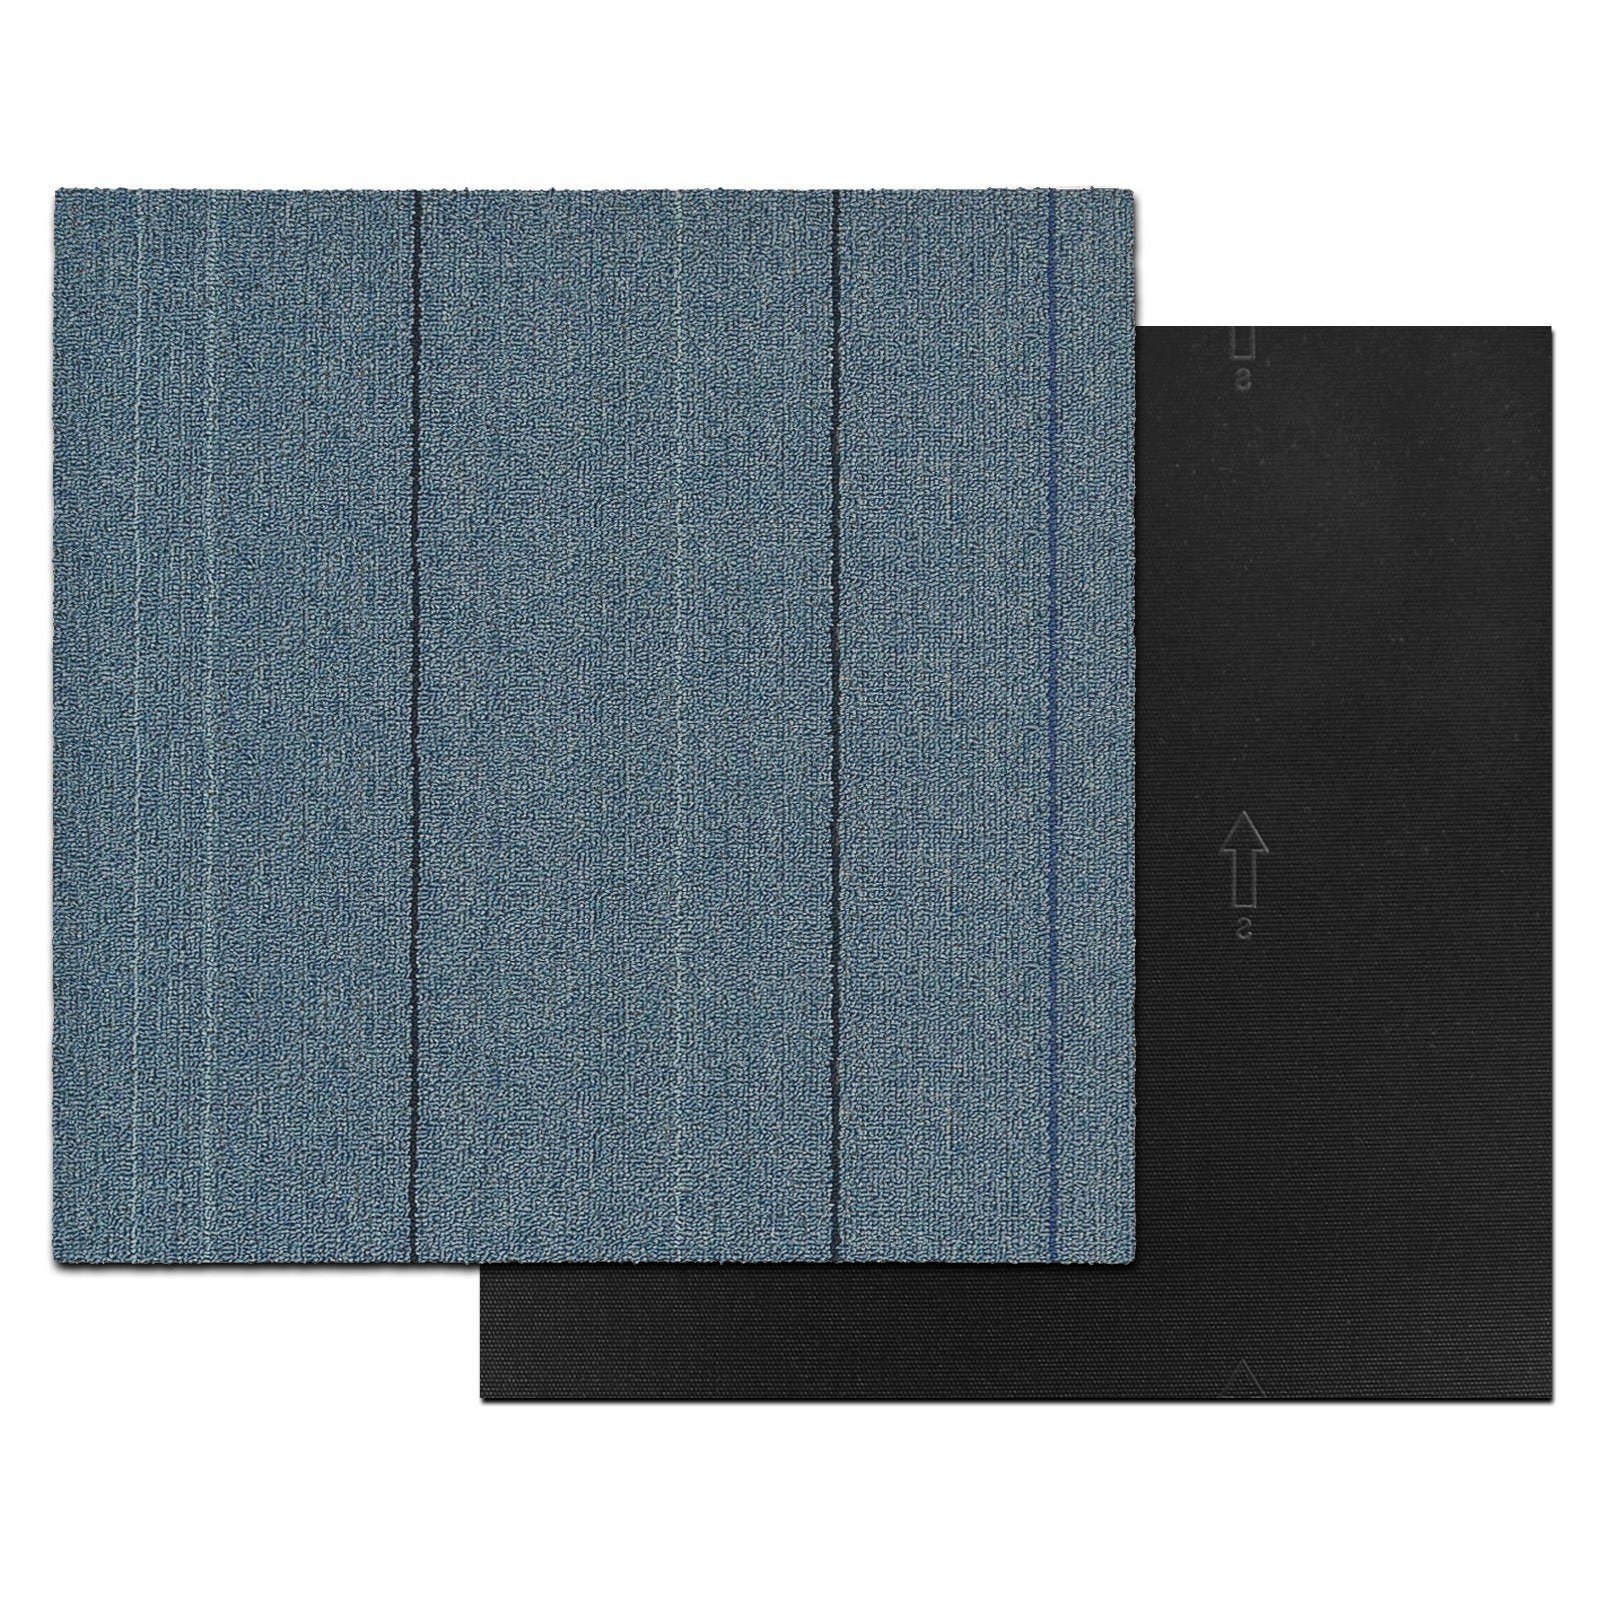 Farben, Bodenschutz, Teppichfliese San mm, B3 - cm, selbstliegend 50x50 Fliese, Marino, Blau quadratisch, Karat, 4,5 verschiedene Höhe: